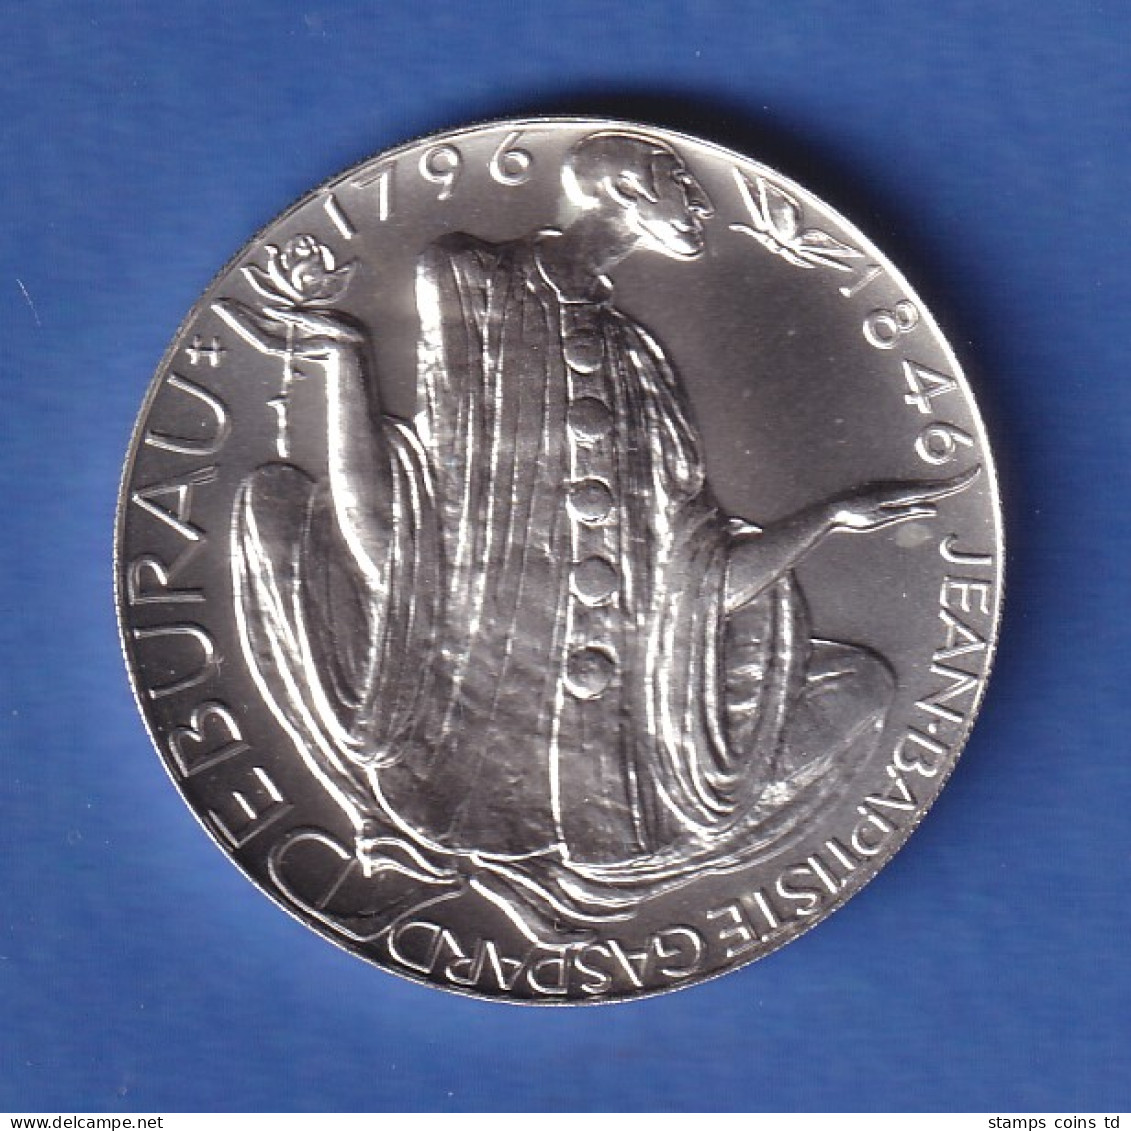 Tschechien 1996 Silbermünze 200 Kronen 200. Geburtstag J.-G. Deburau Stg - Tchéquie